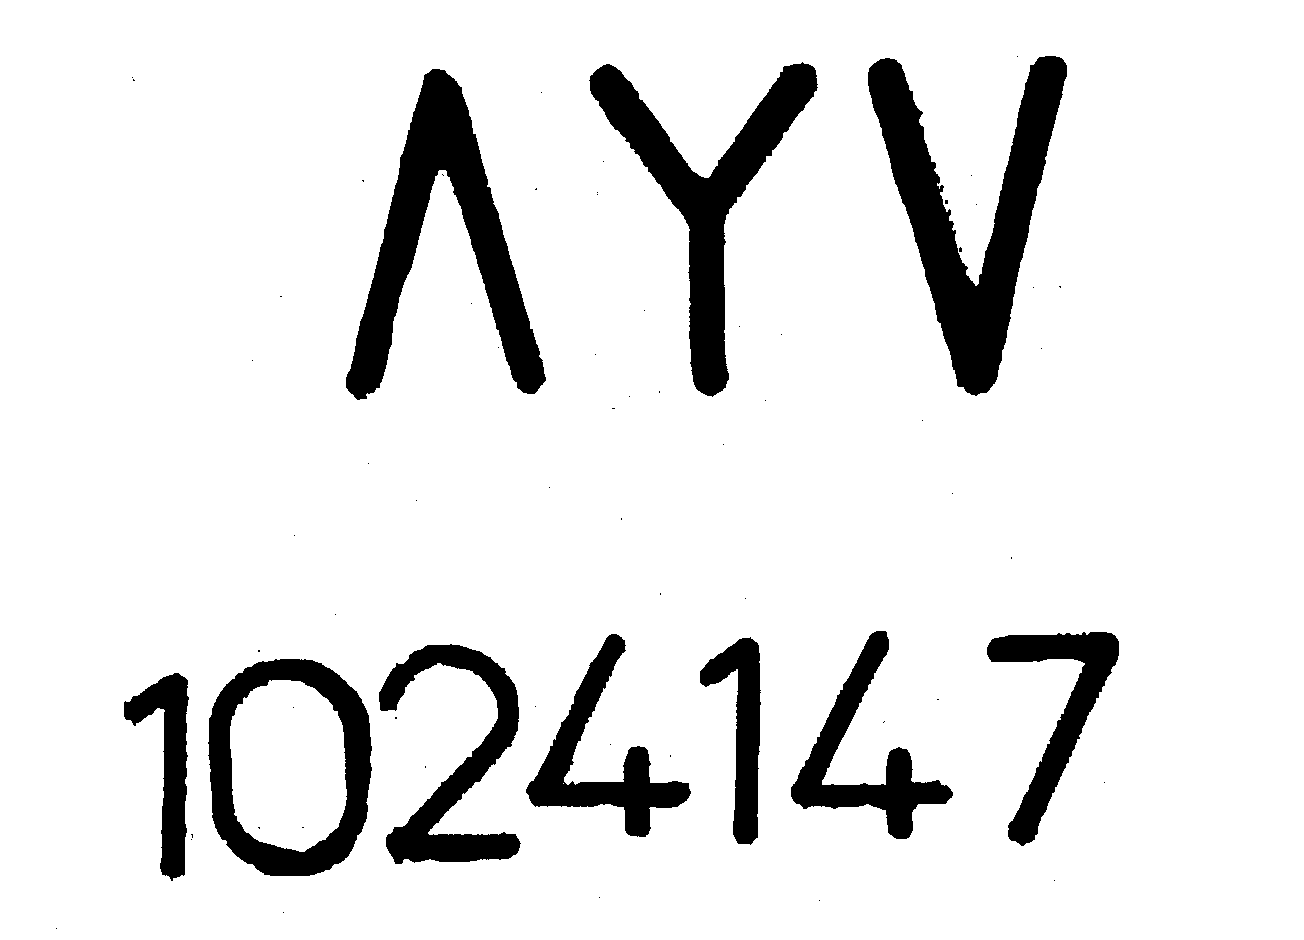  A Y V 1024147